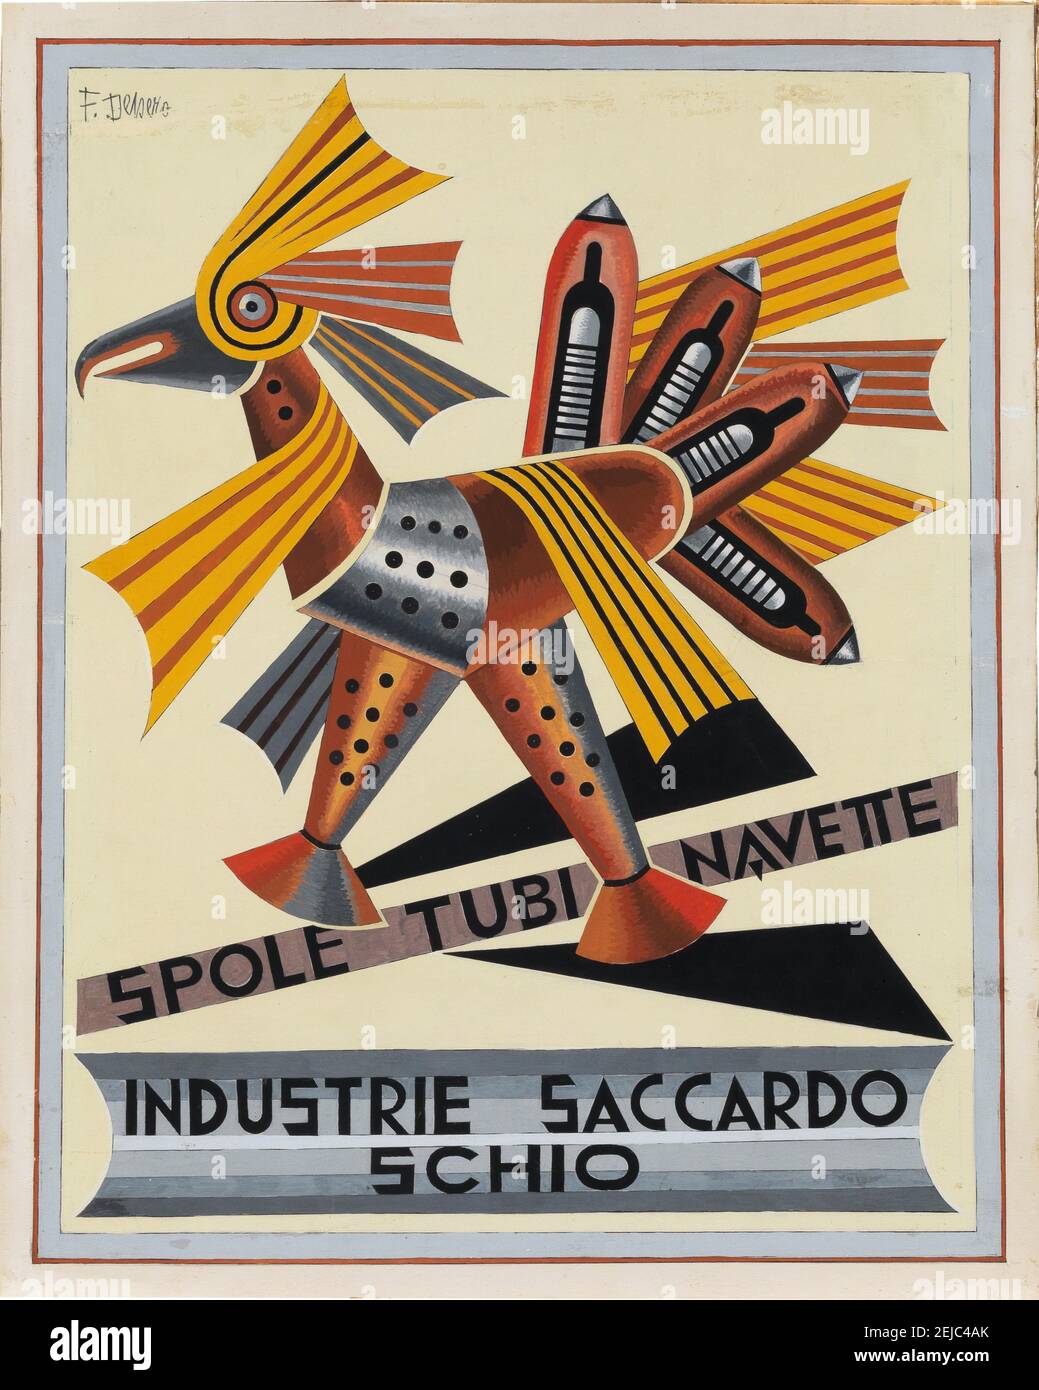 Gallo Spoletta - Industrie Saccardo. Museum: PRIVATE COLLECTION. Author: FORTUNATO DEPERO. Stock Photo